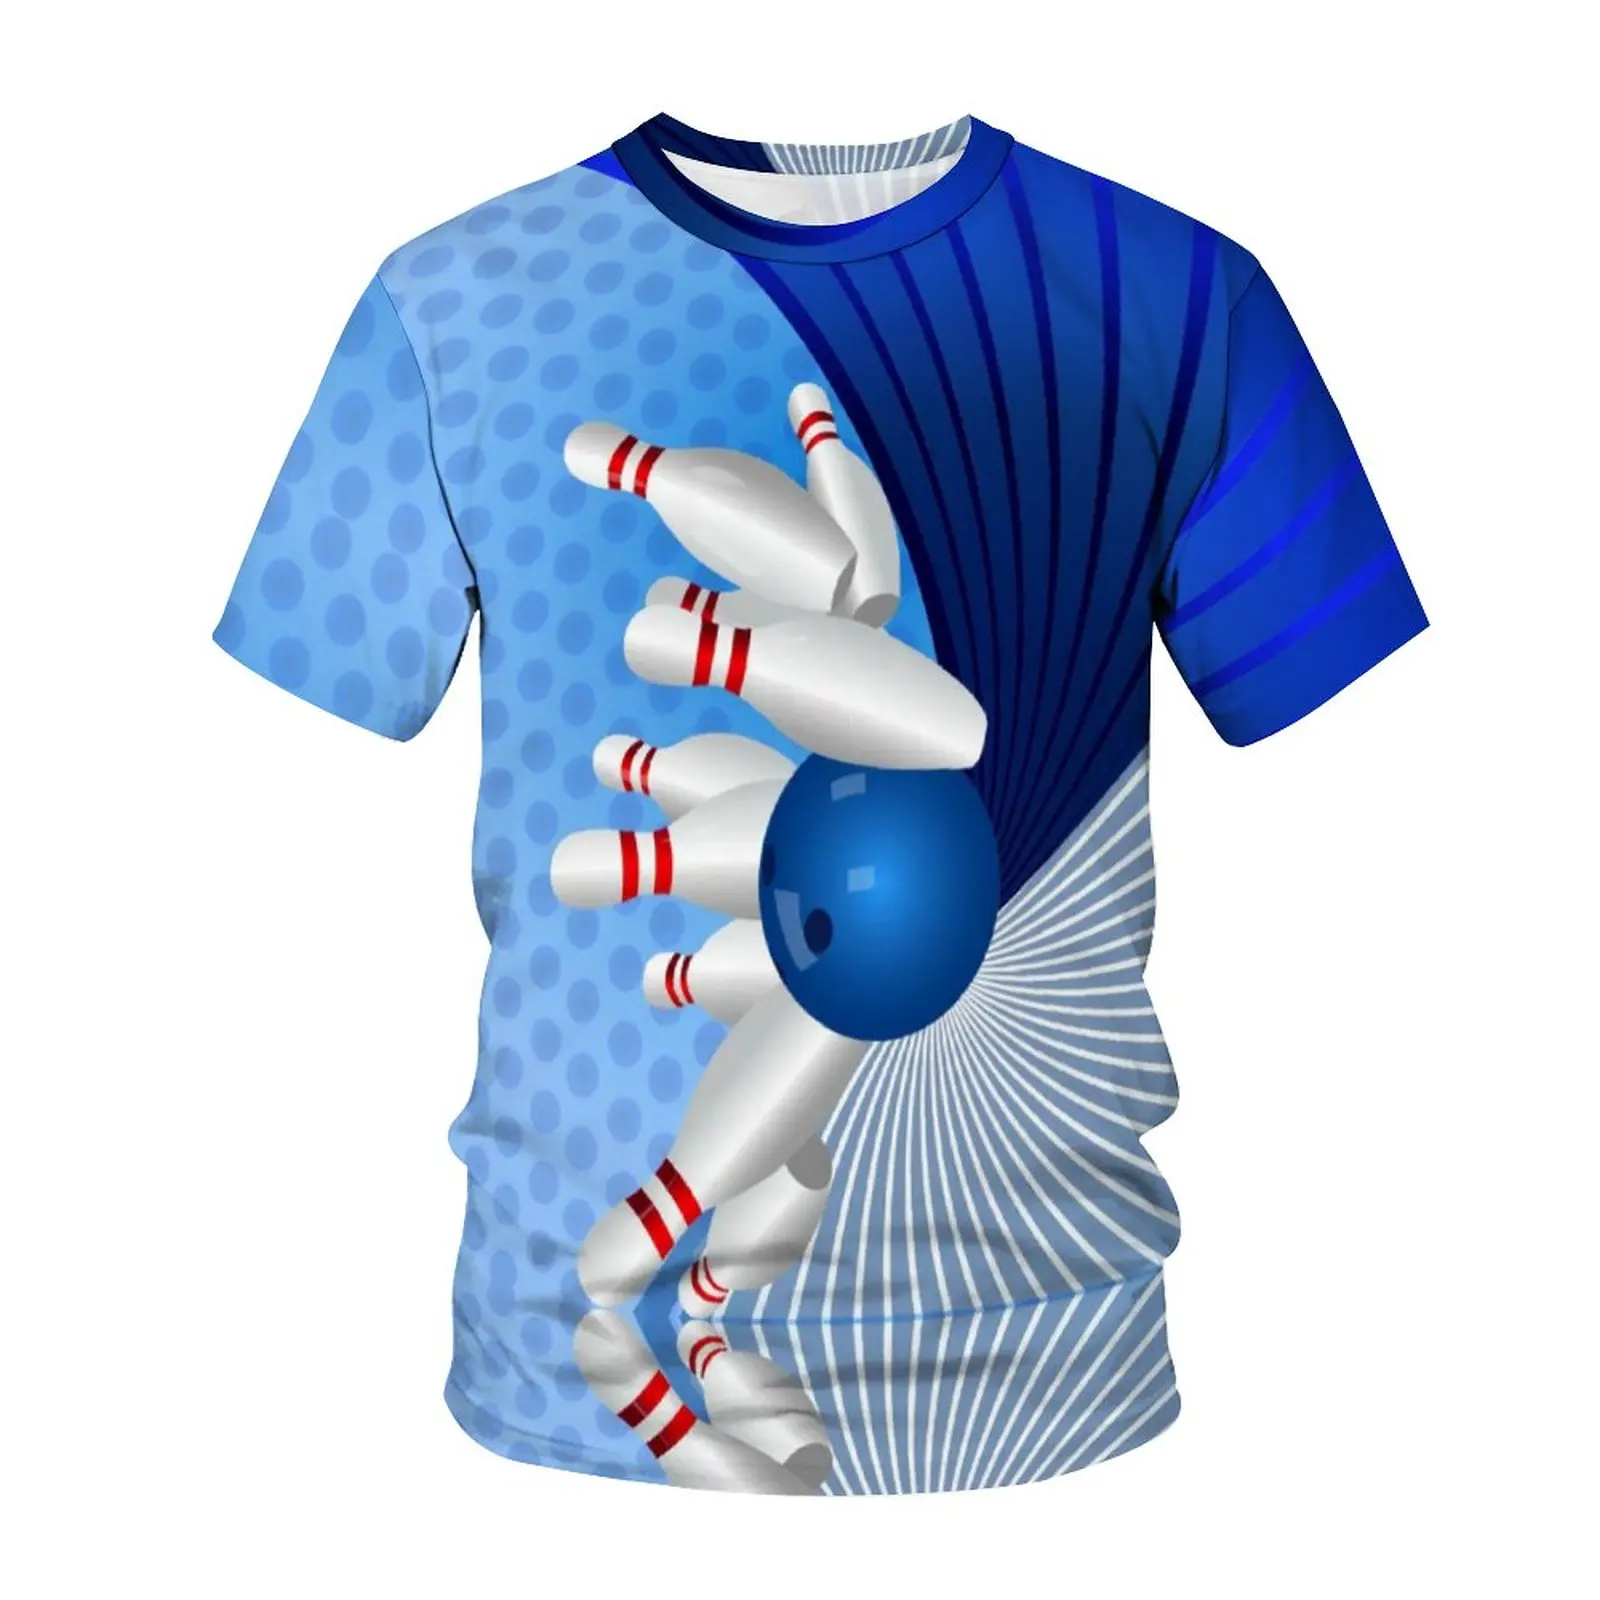 Последняя летняя мода, Голографический Спортивный Боулинг, Мужская футболка С 3D HD печатью, Модный Нейтральный Удобный Топ С круглым вырезом И Коротким рукавом